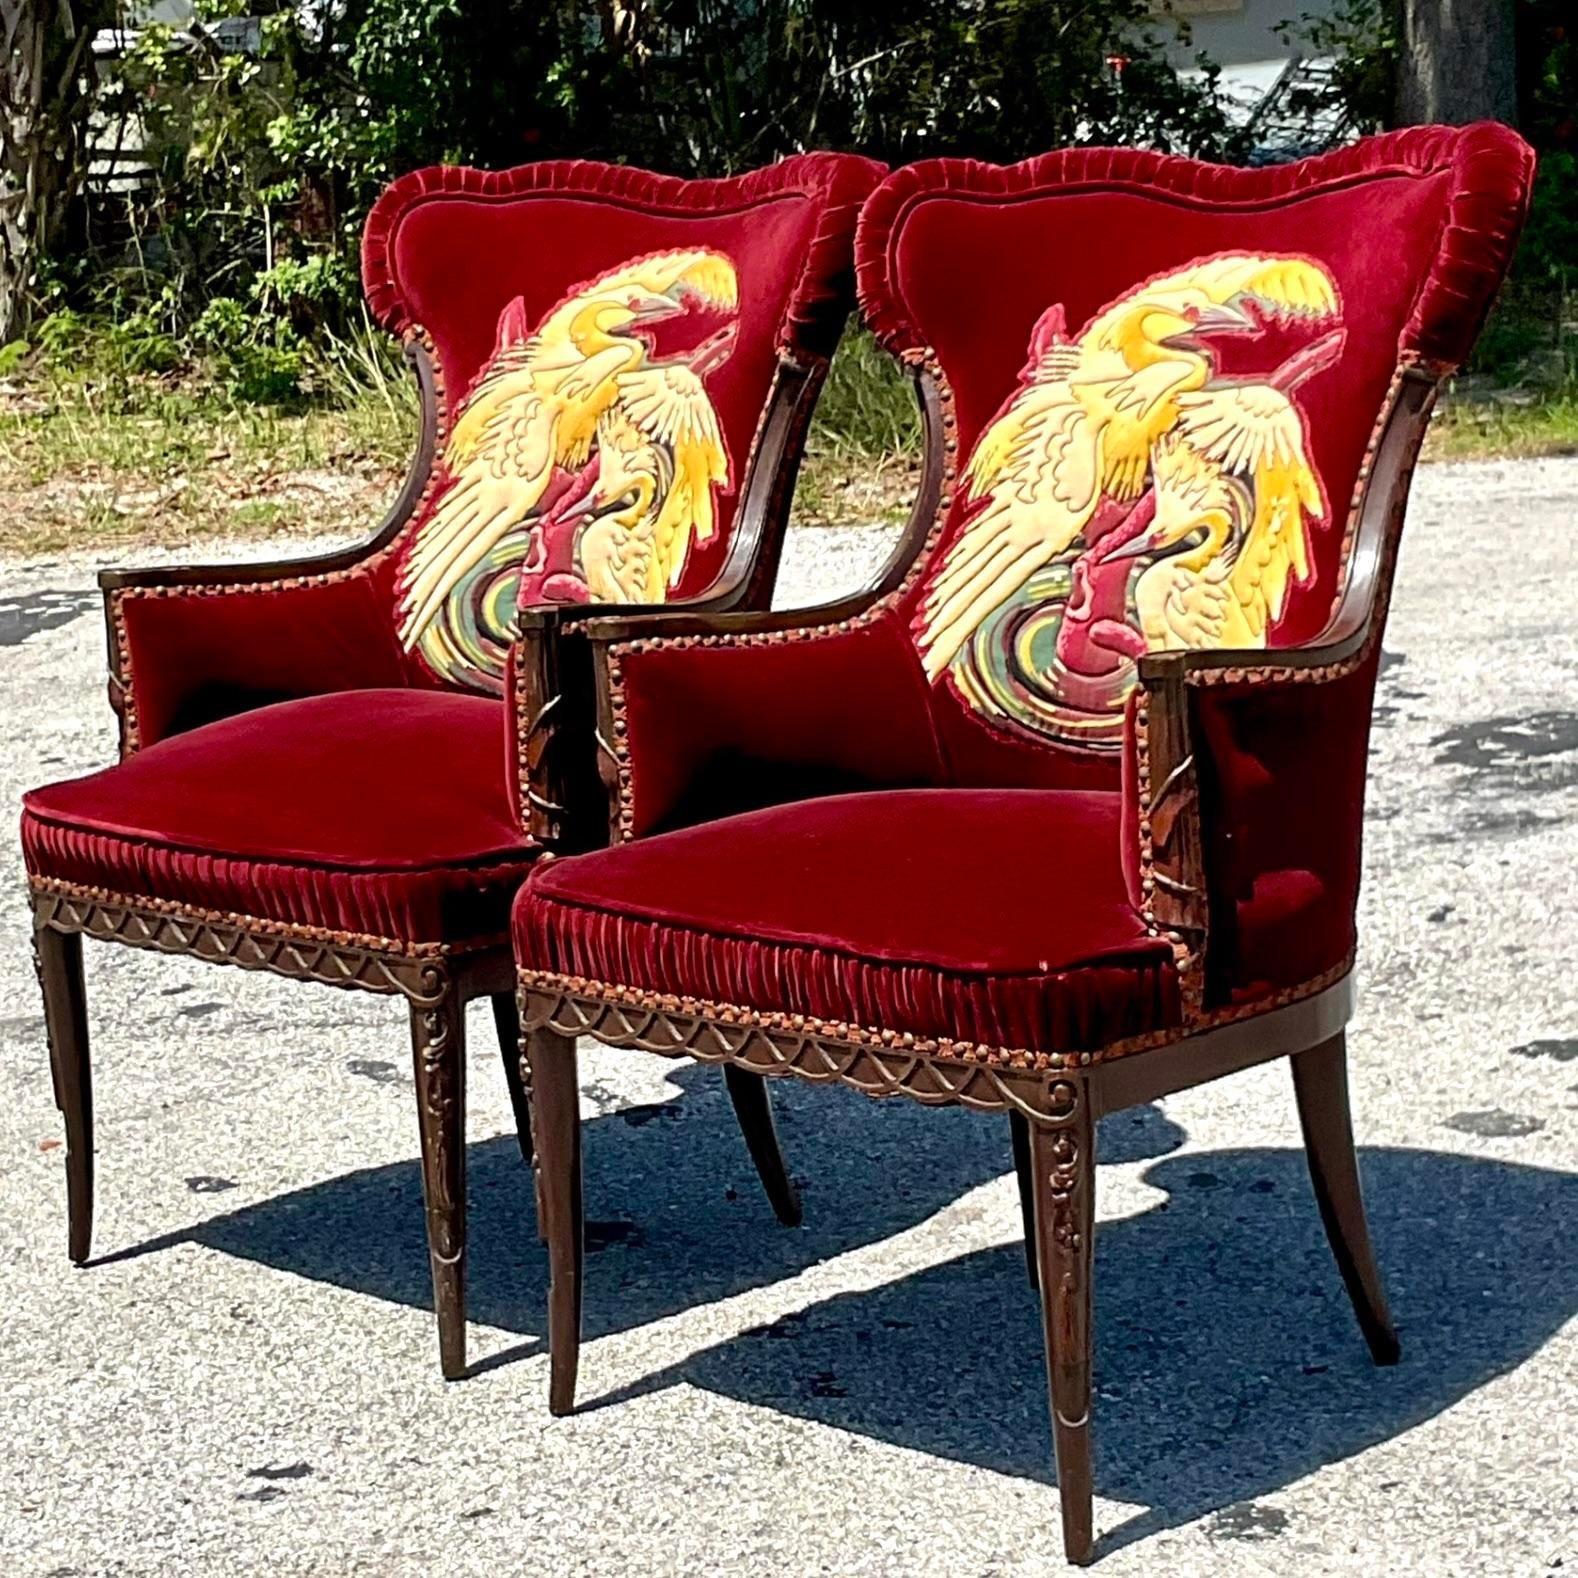 Une extraordinaire paire de fauteuils en velours vintage. Un velours rouge profond avec un détail ruché le long du bord. Un fabuleux motif de grue sur le dossier de chaque chaise. Détails sculptés à la main sur la garniture en bois. Acquis d'une